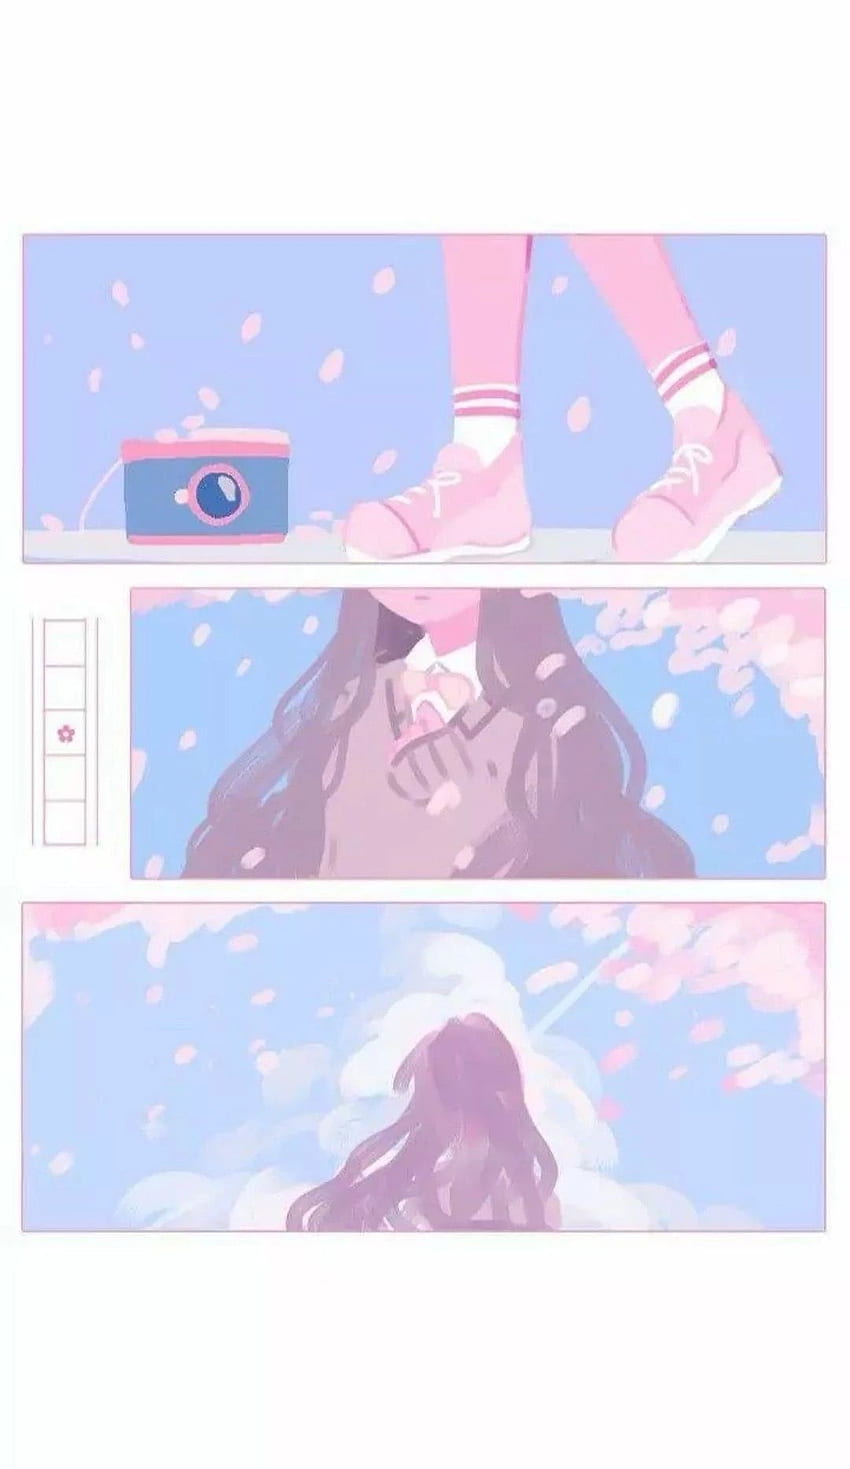 desktop wallpaper soft aesthetic anime phone background soft aesthetic anime phone background in 2020 aesthetic anime anime cute art